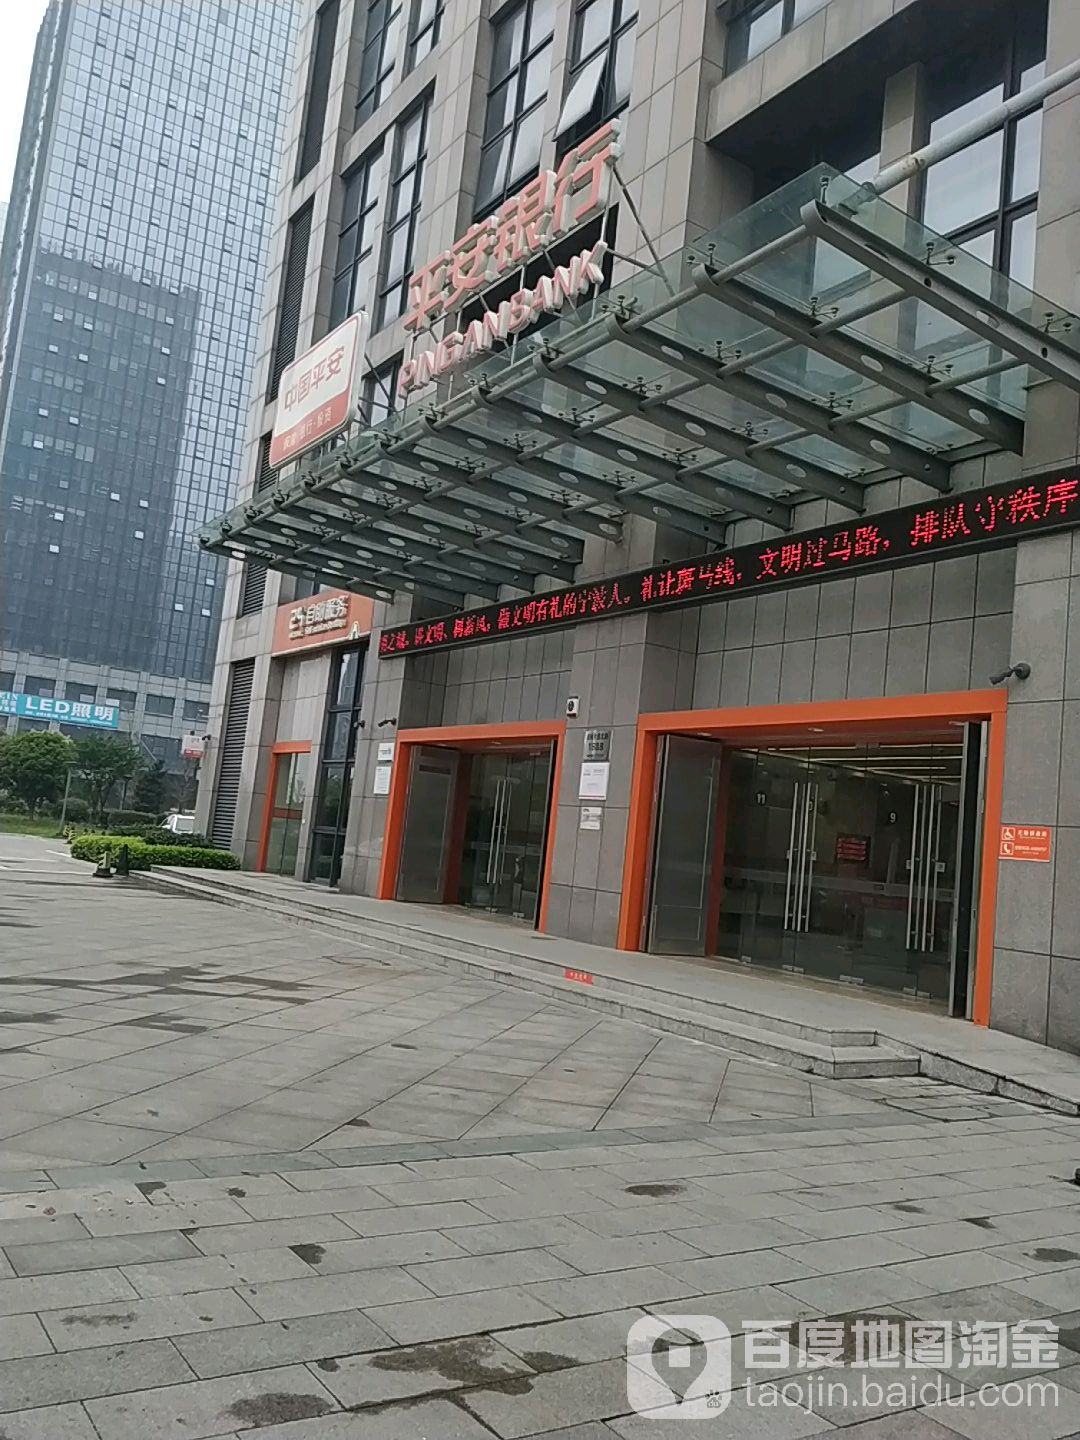 中國平安銀行24小時自助銀行(寧波慈溪支行)